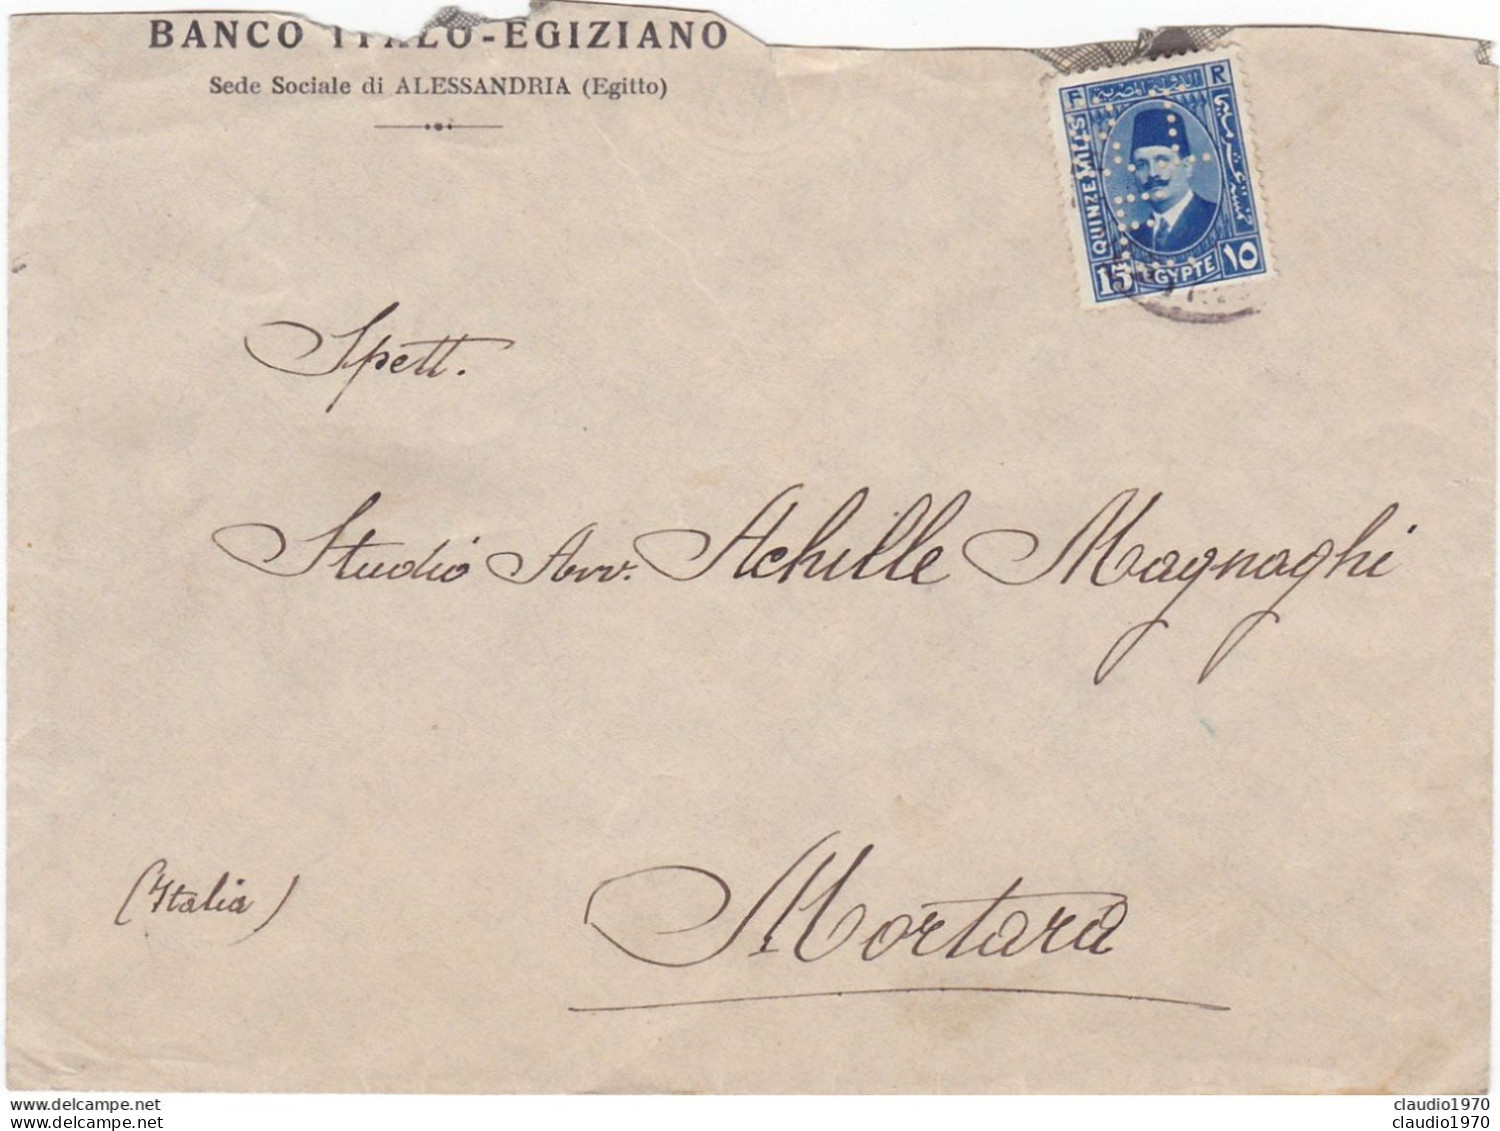 EGITTO - ALESSANDRIA - BANCO ITALO - EGIZIANO - BUSTA VIAGGIATA PER MORTARA(PV) 1957 - FRANCOBOLLO PERFIN - Covers & Documents